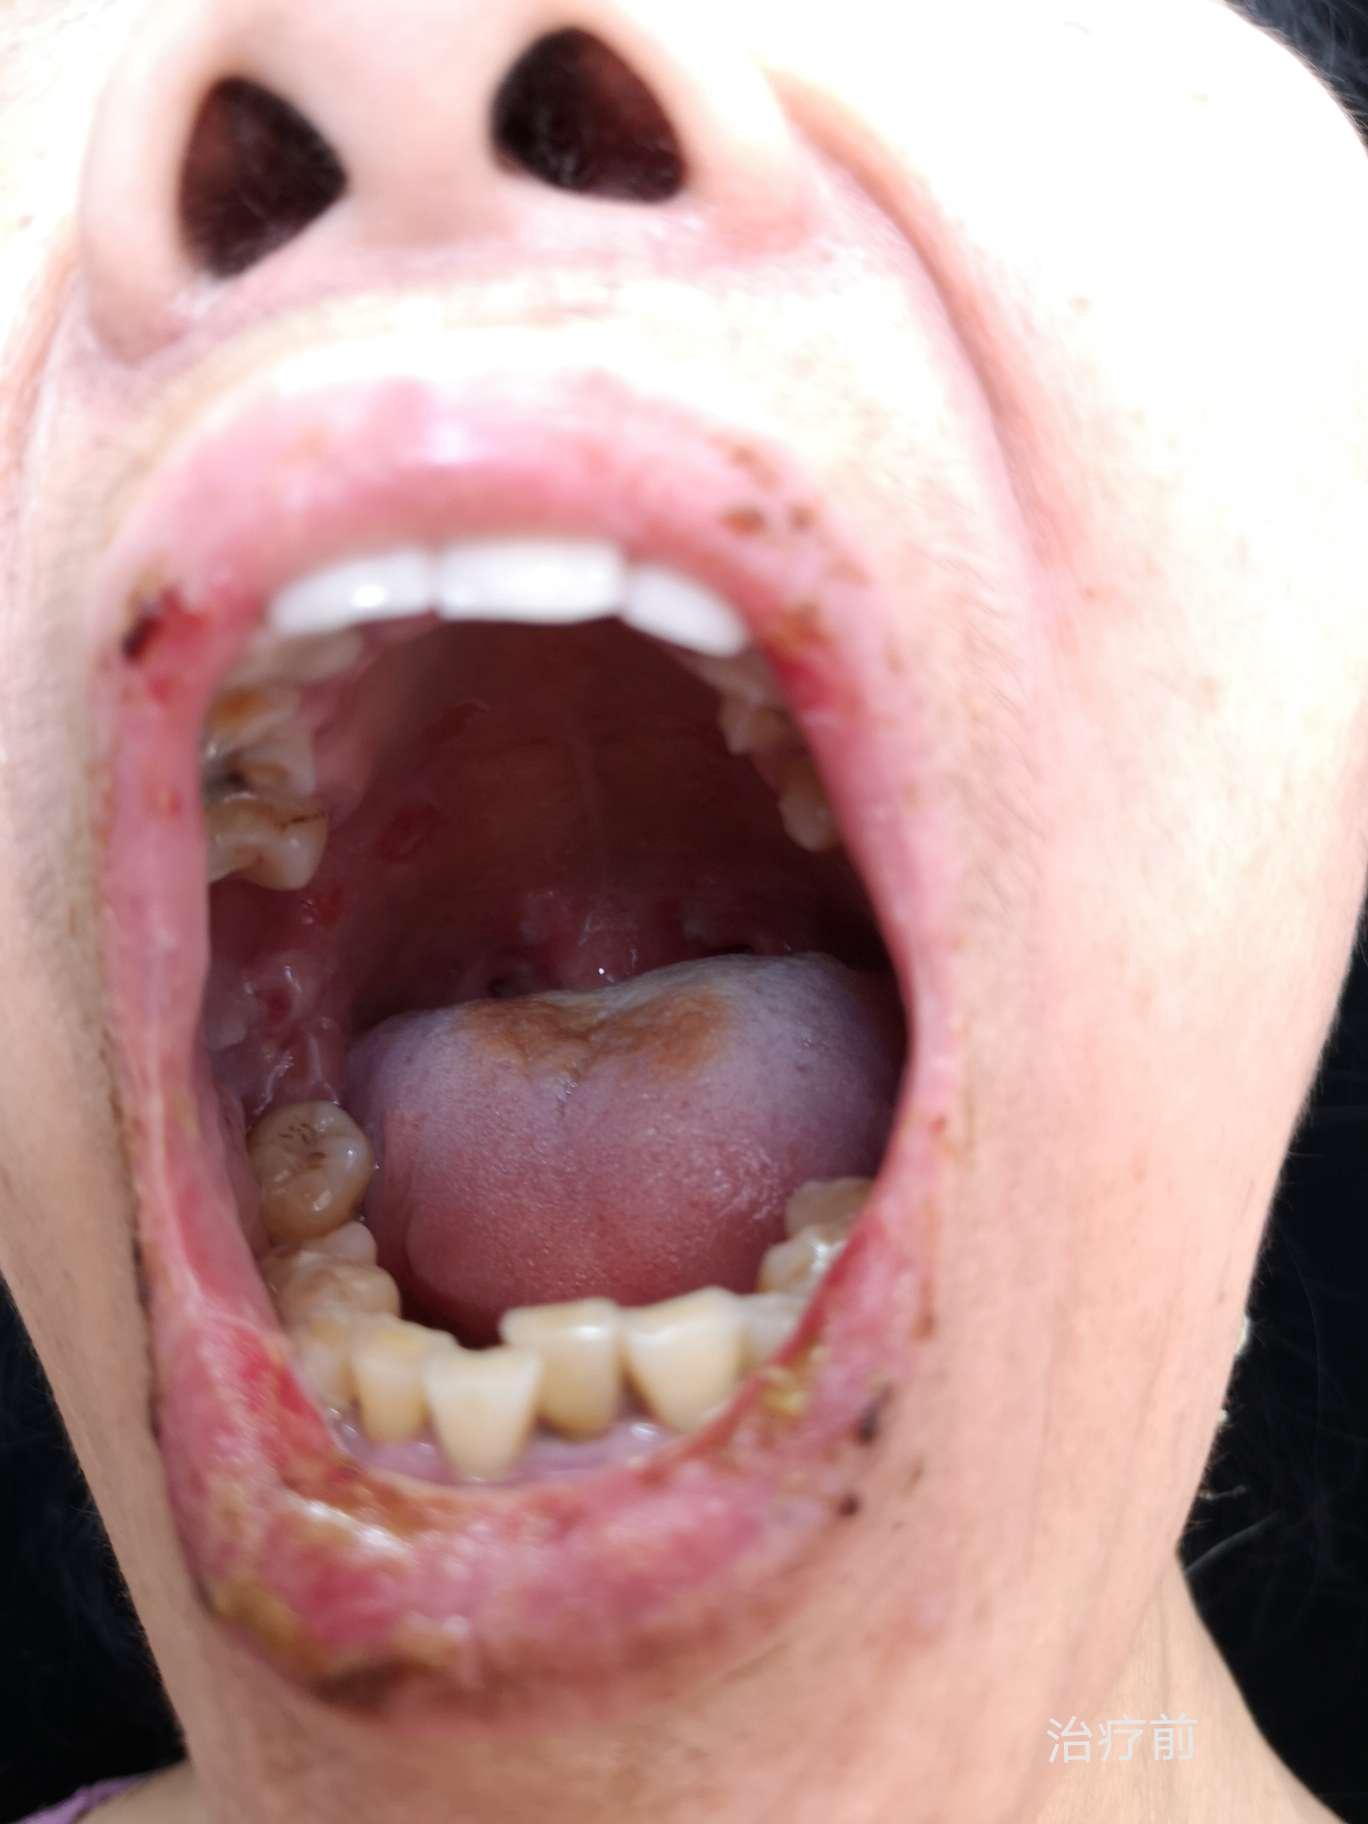 65岁患者口腔黏膜唇部红斑及水疱你能想到它吗